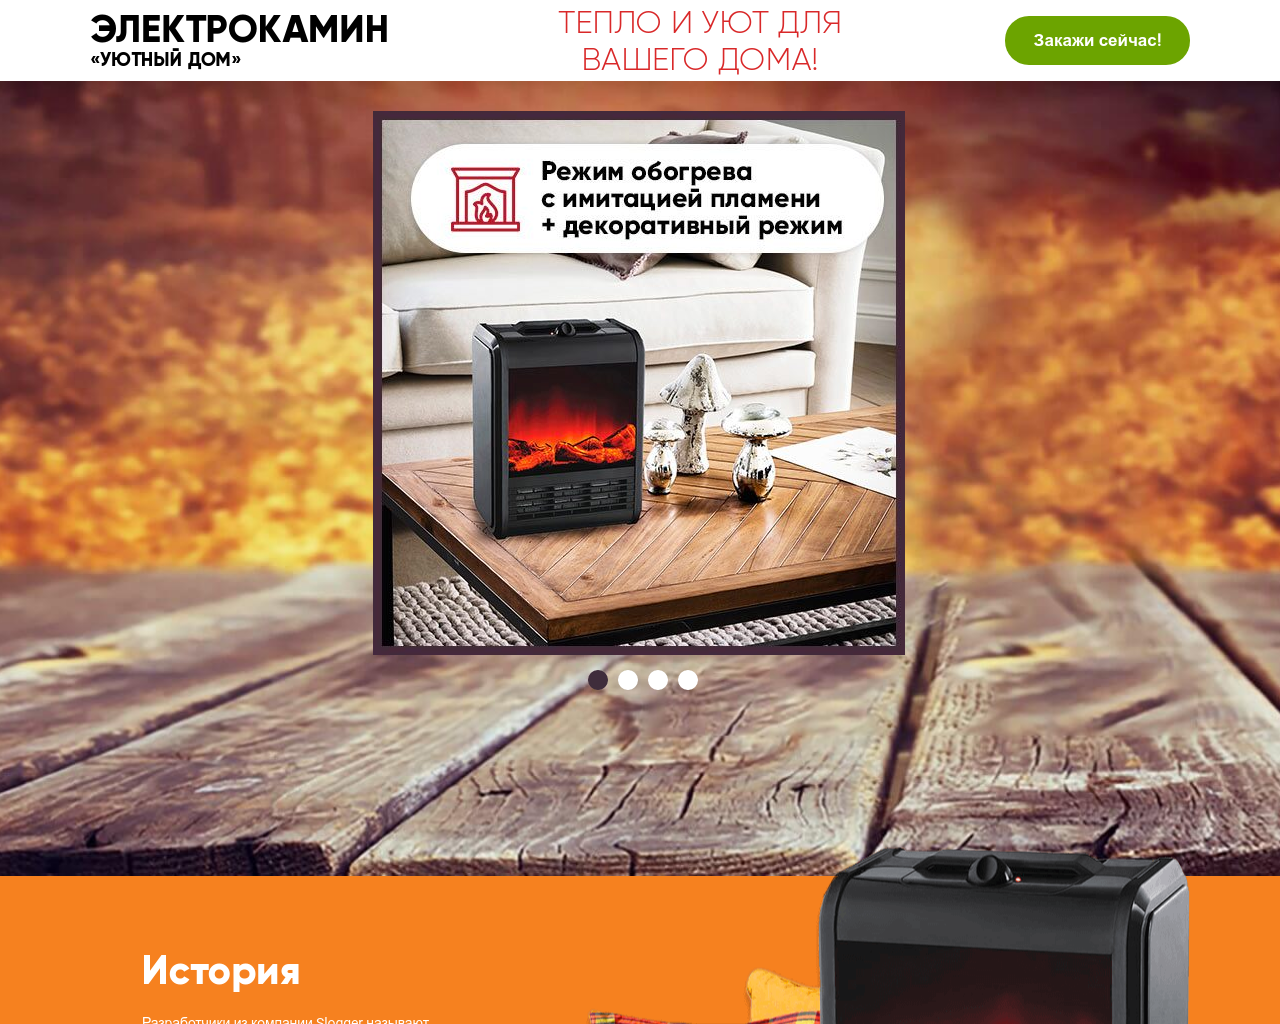 Изображение сайта shop-smart.ru в разрешении 1280x1024